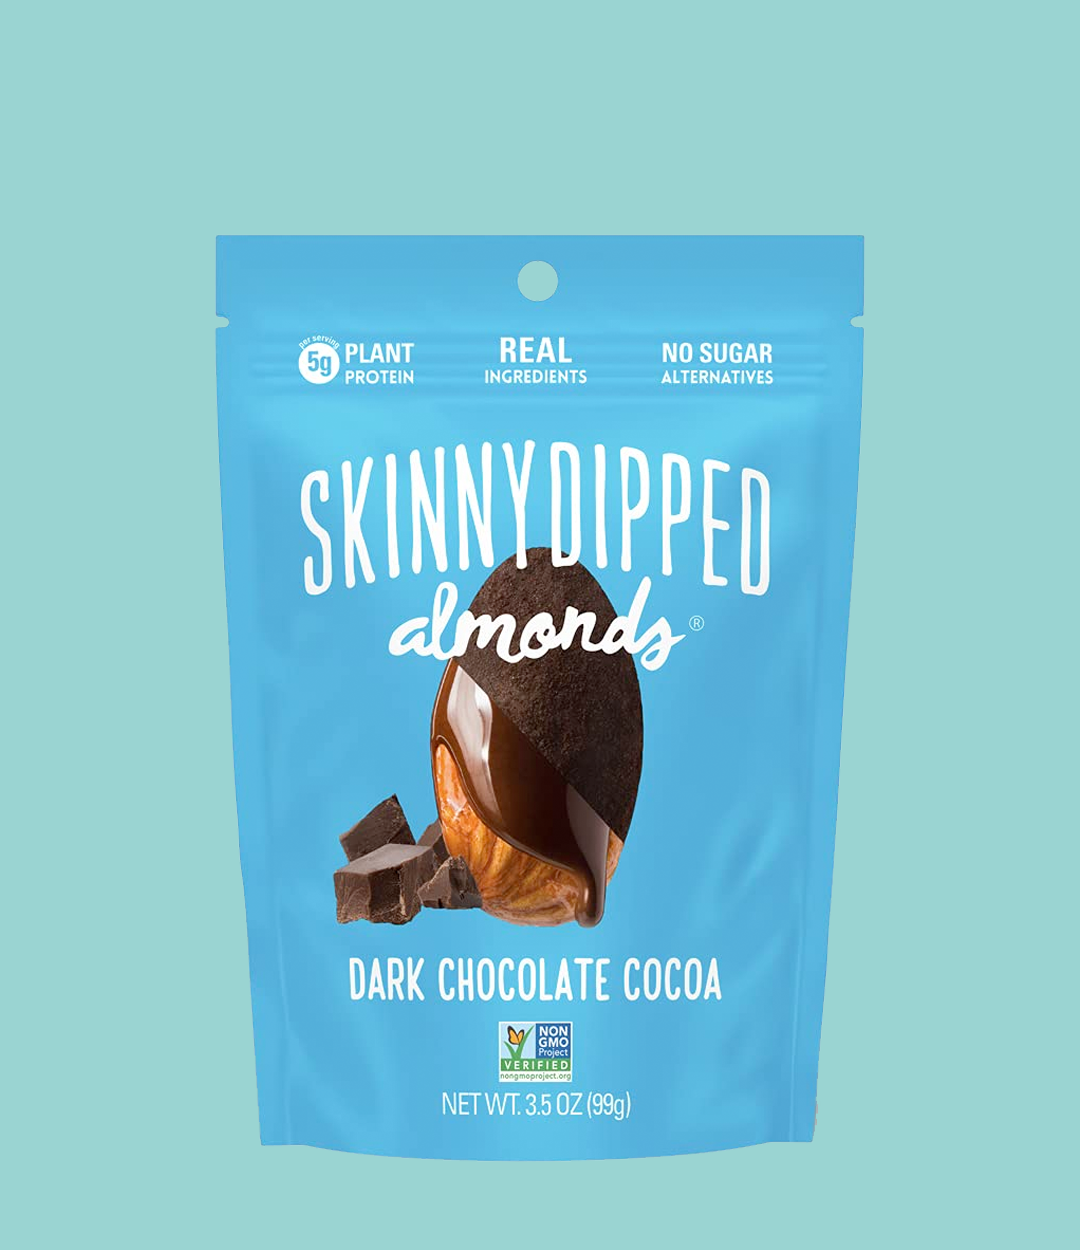 Dark Chocolate Cocoa Covered Almonds